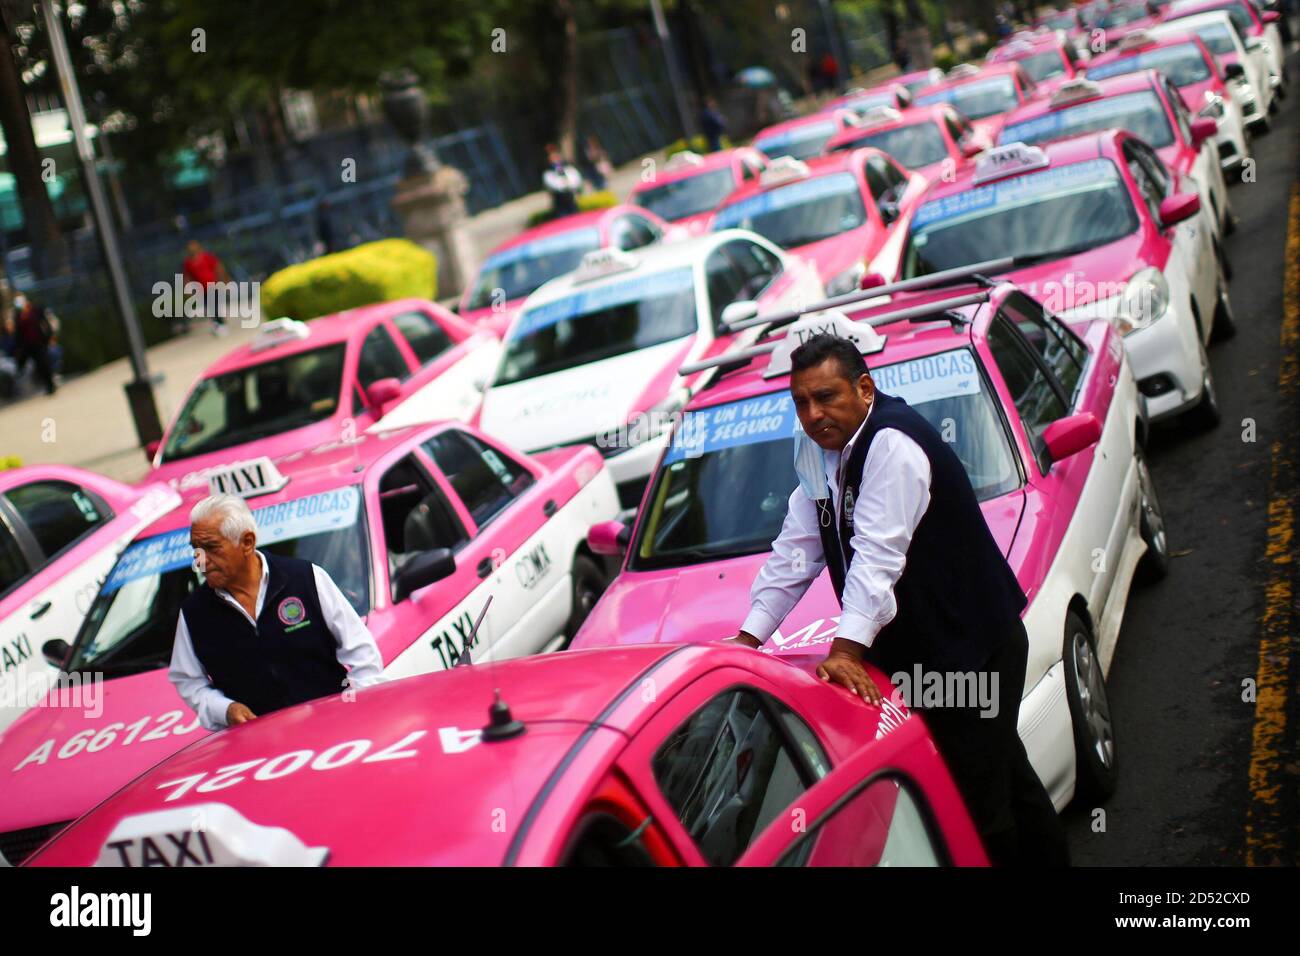 Los taxistas protestan contra las aplicaciones de transporte de taxis como Uber, Carify y Didi en el monumento Angel de la Independencia, en la Ciudad de México, México, 12 de octubre de 2020. REUTERS/Edgard Garrido Foto de stock